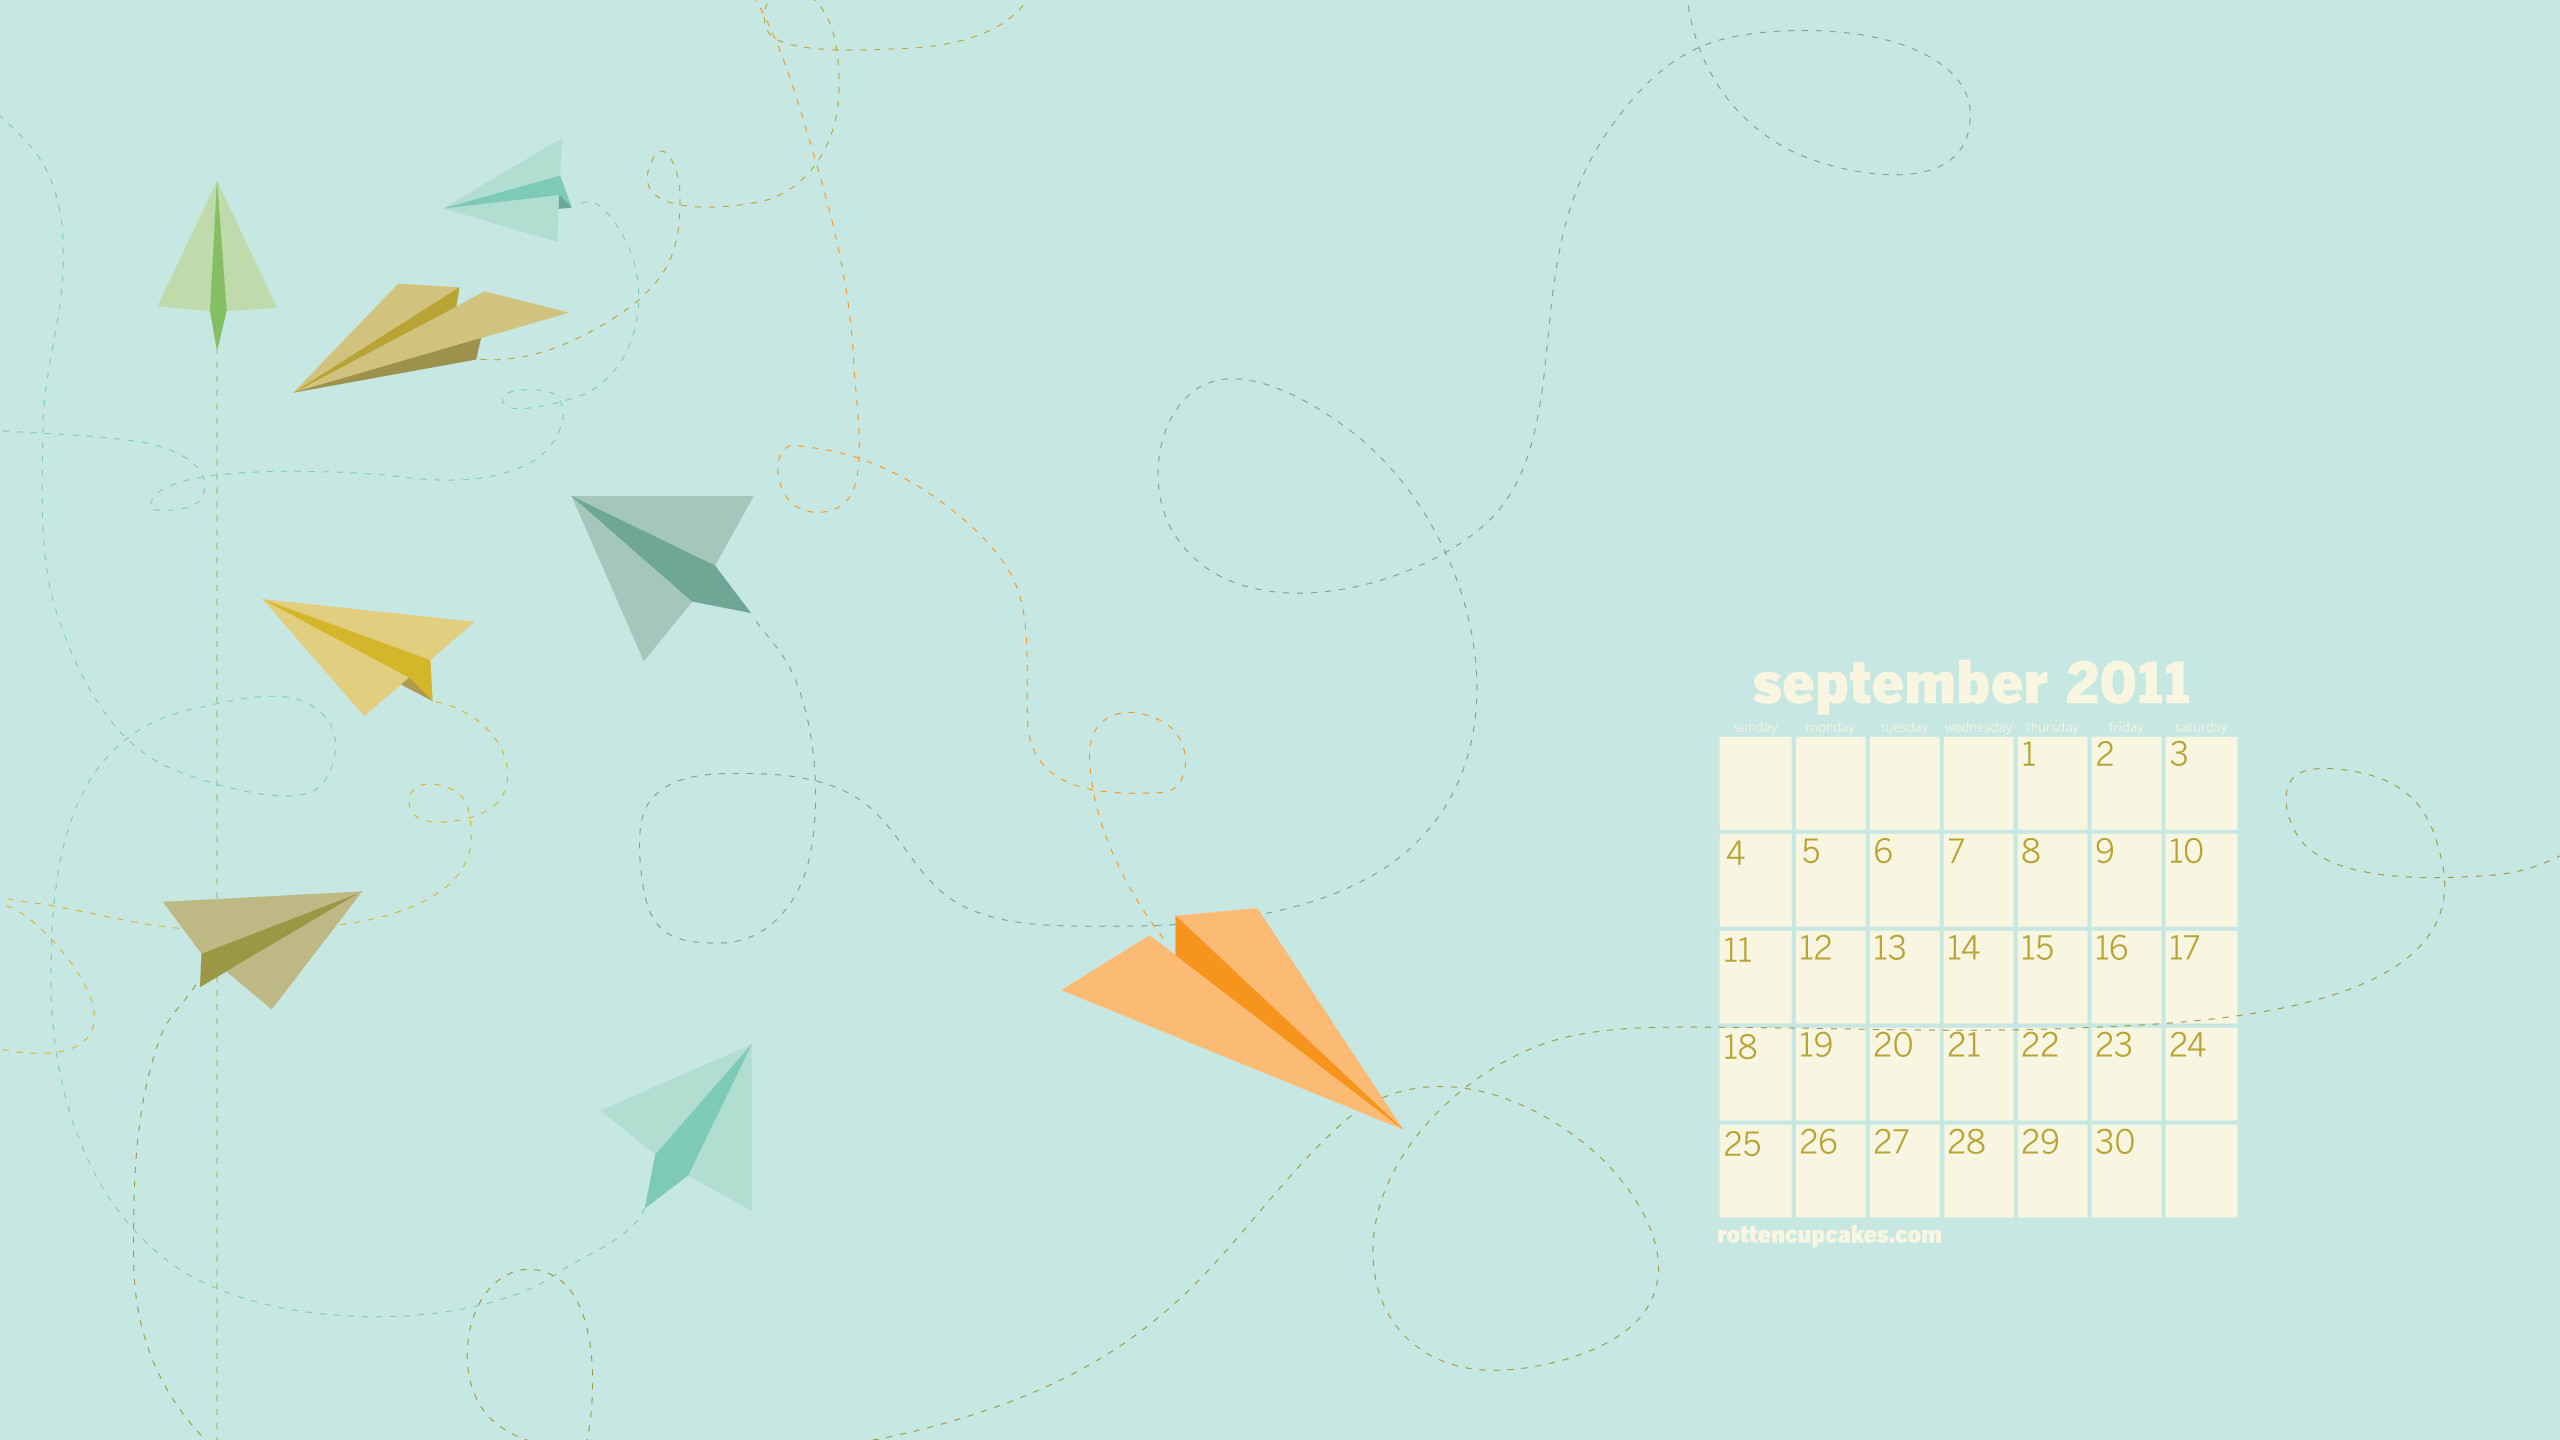 2560x1440 September 2011 Desktop Calendar wallpaper - 1064908